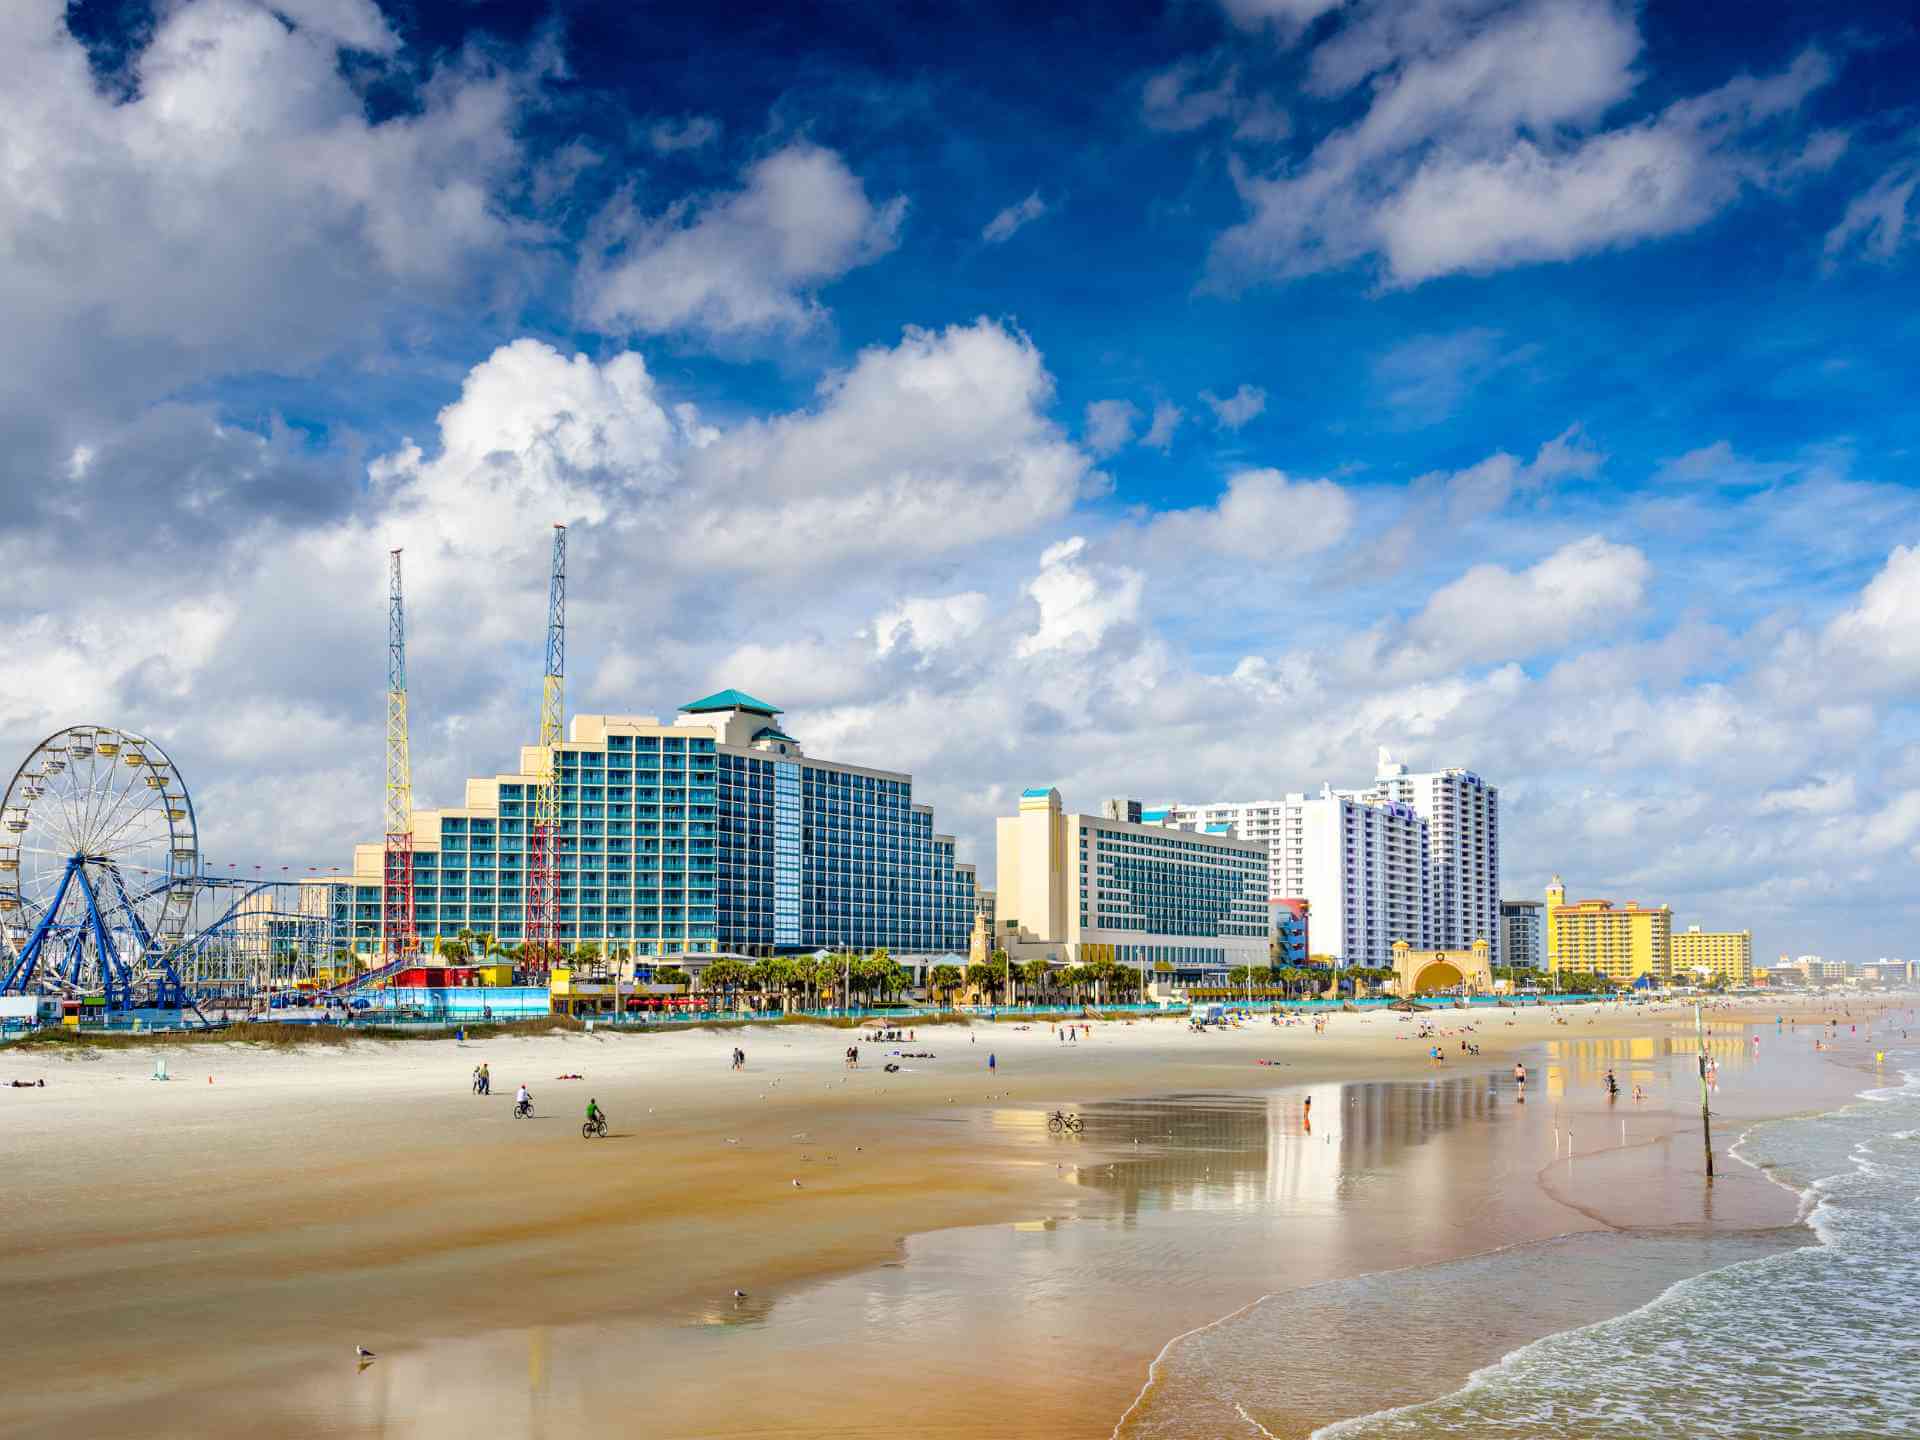 15 Things to Do in Daytona Beach, FL